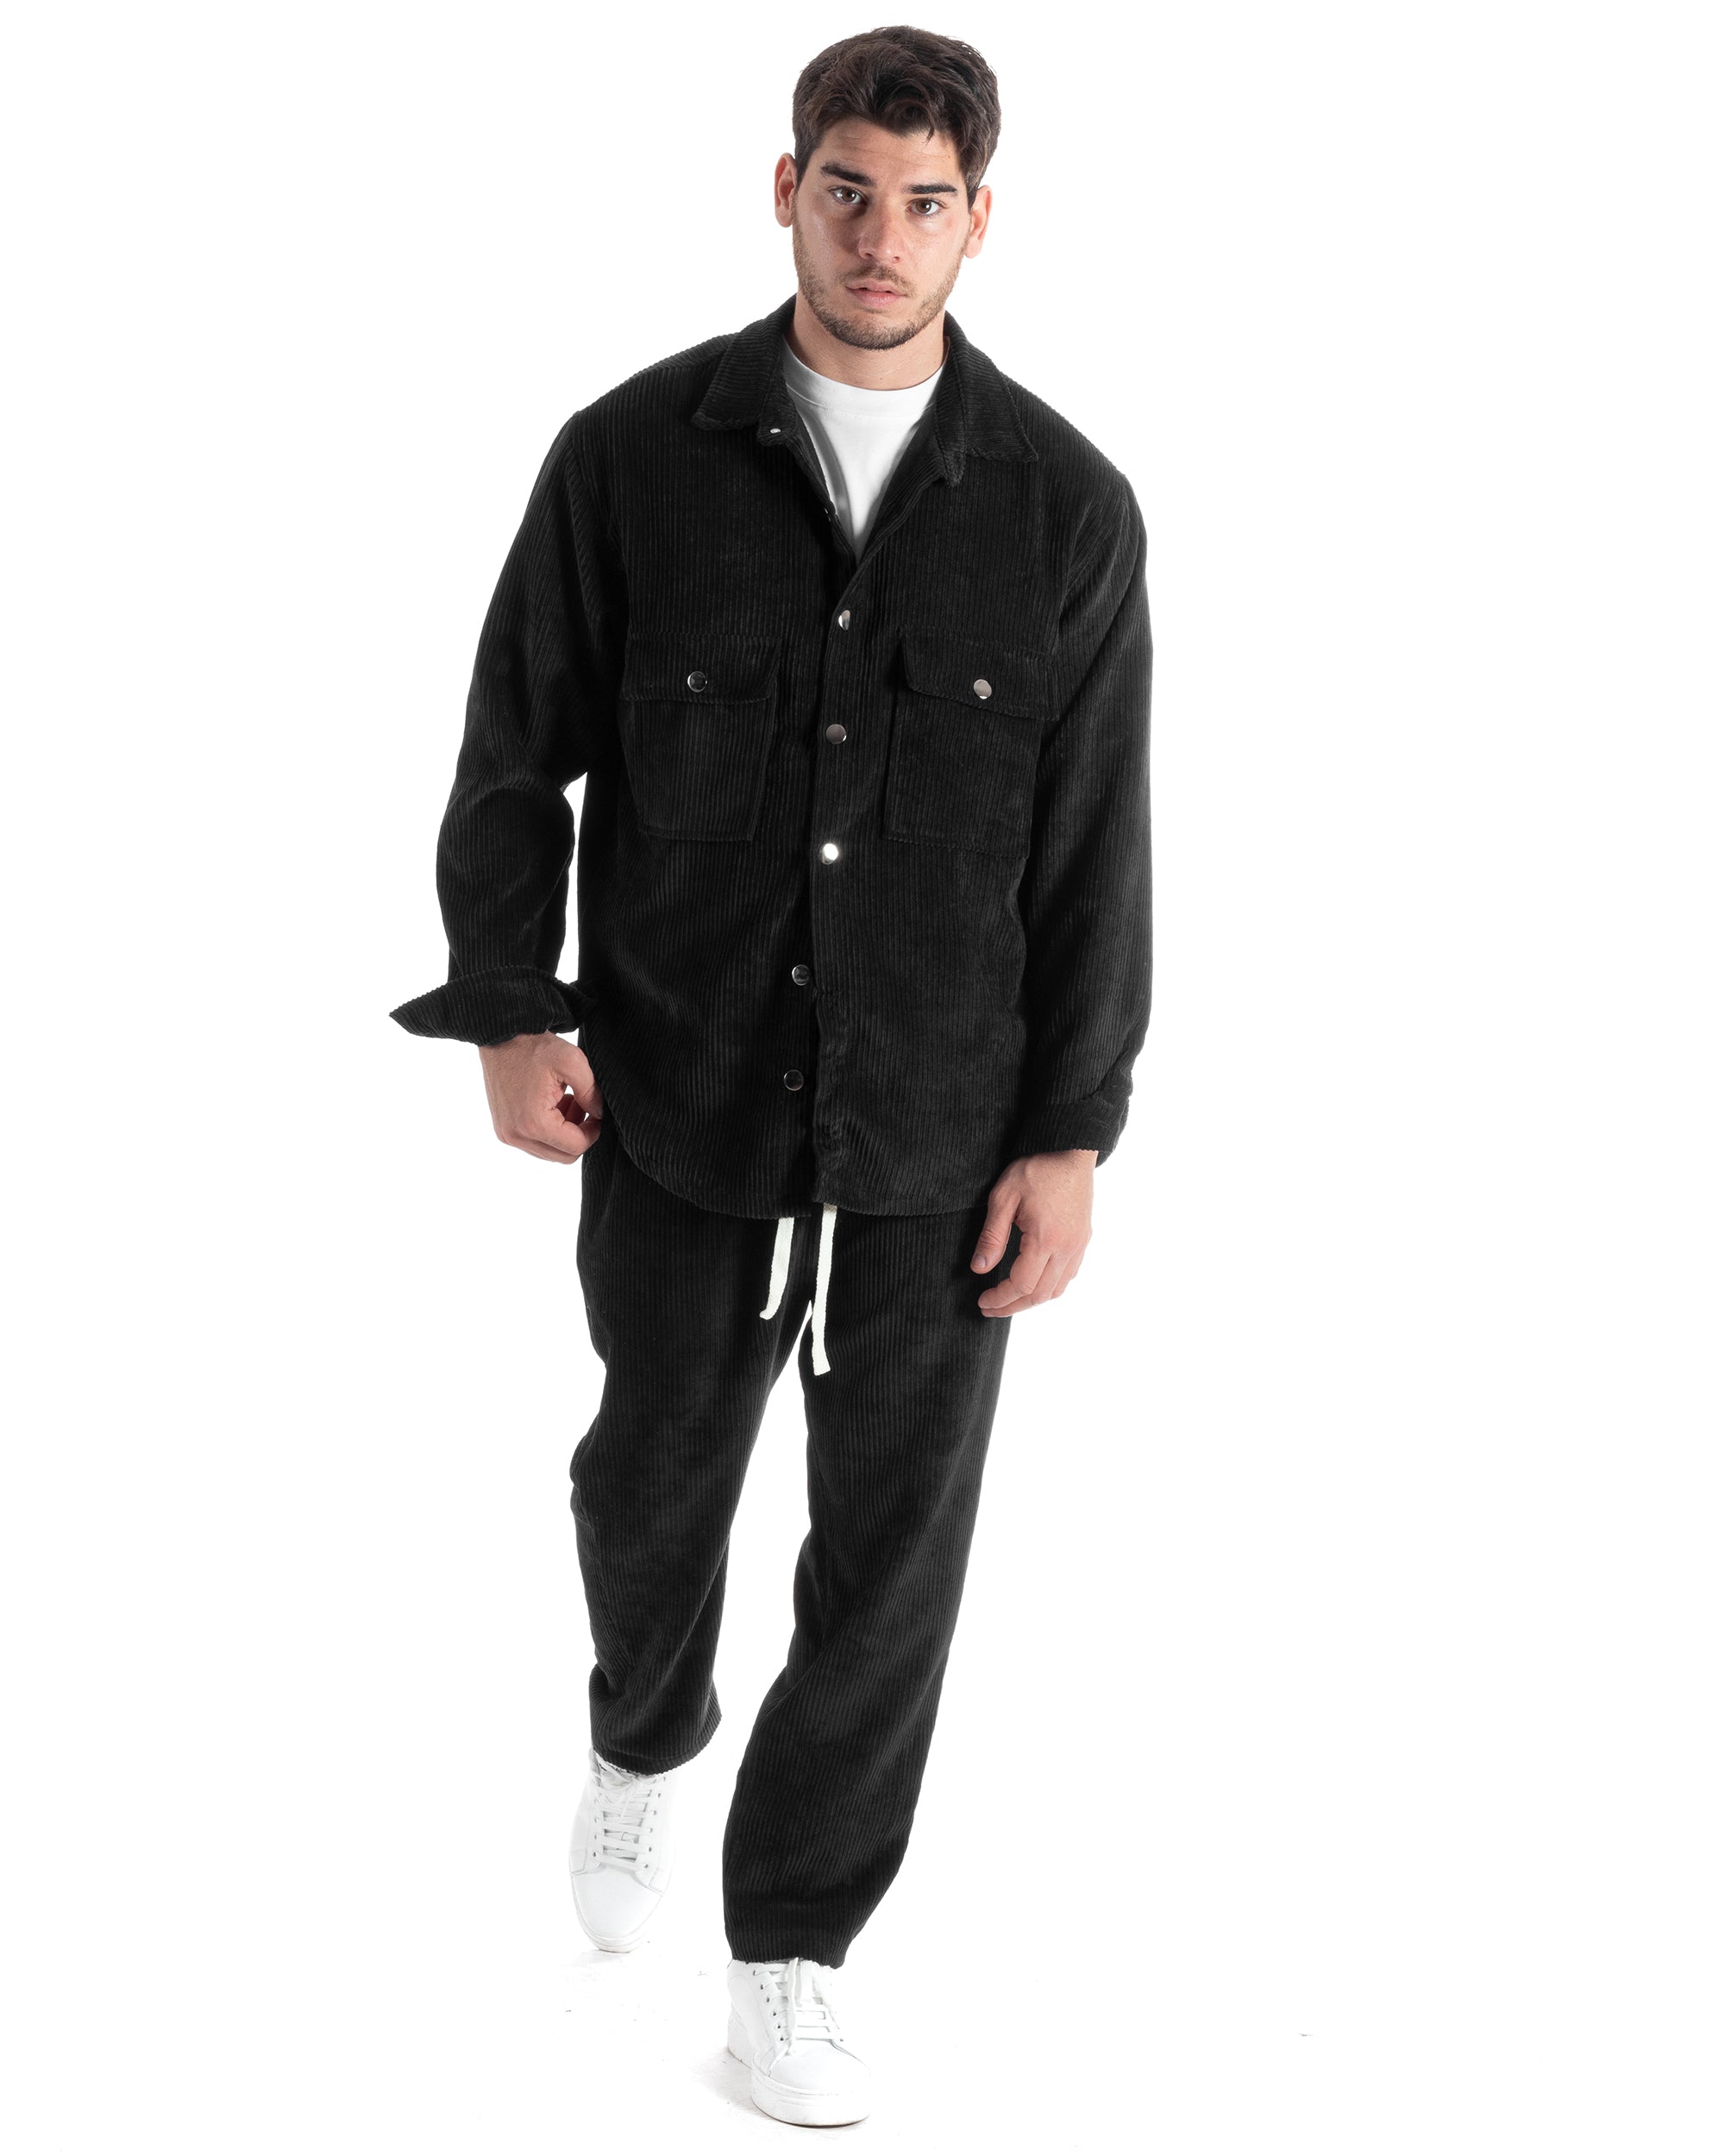 Completo Set Coordinato Uomo Velluto Costine Camicia Con Colletto Pantalaccio Outfit Nero GIOSAL-OU2436A